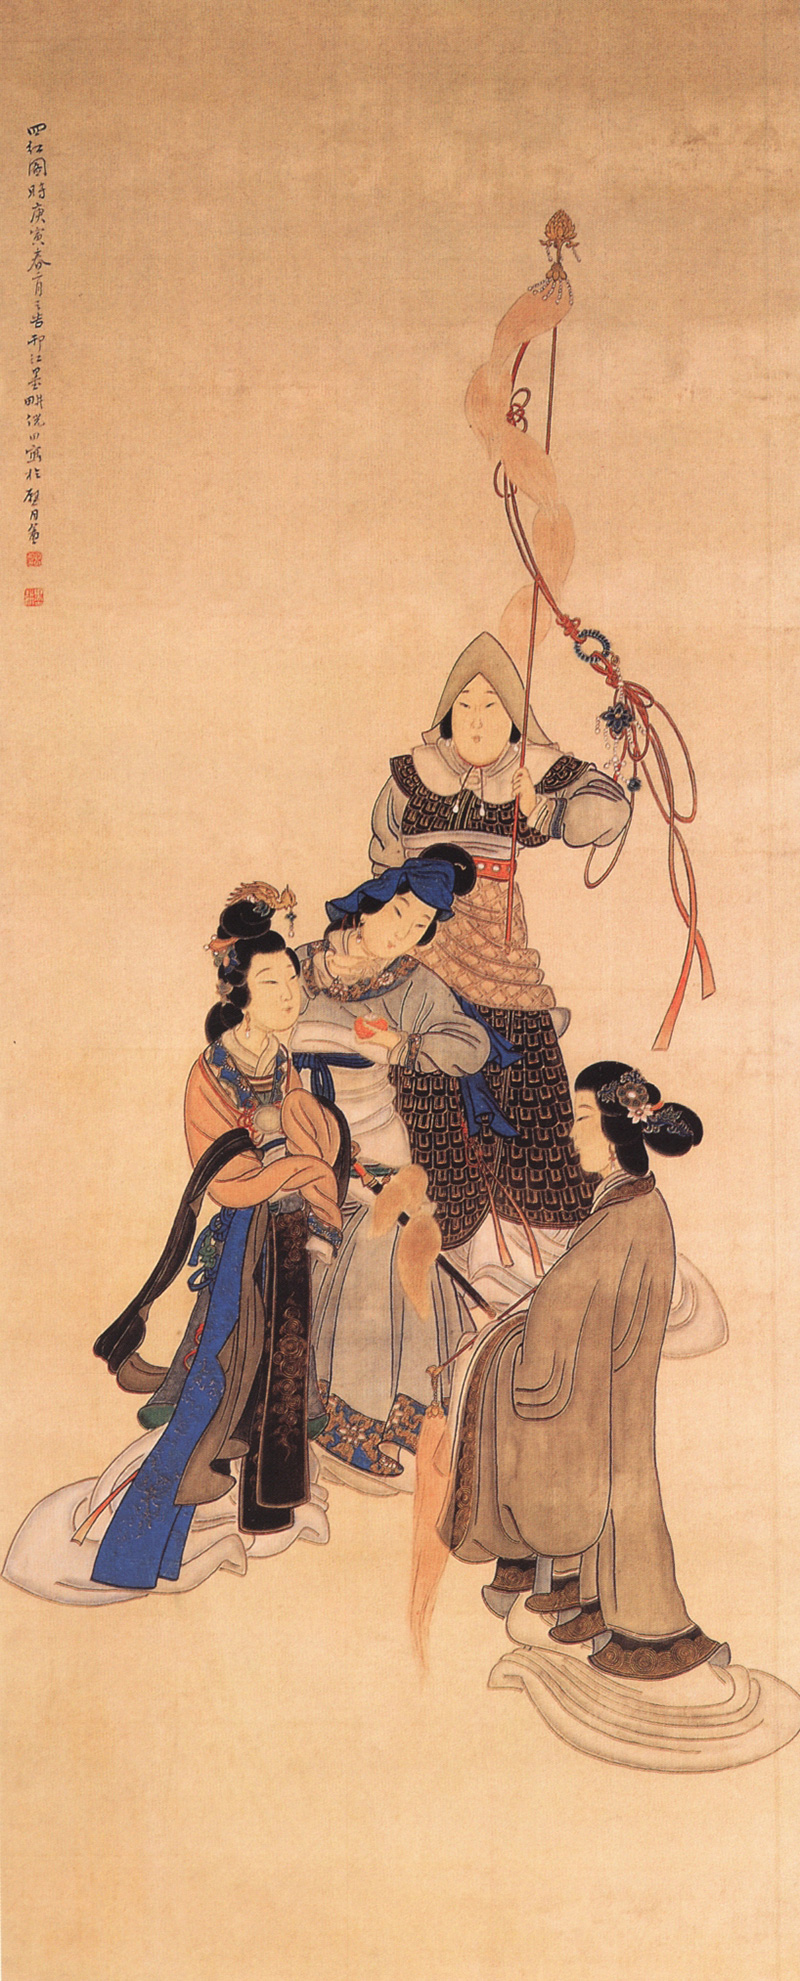 Las cuatro bellezas de la Antigua China. Foto: Wikimedia commons, dominio público.